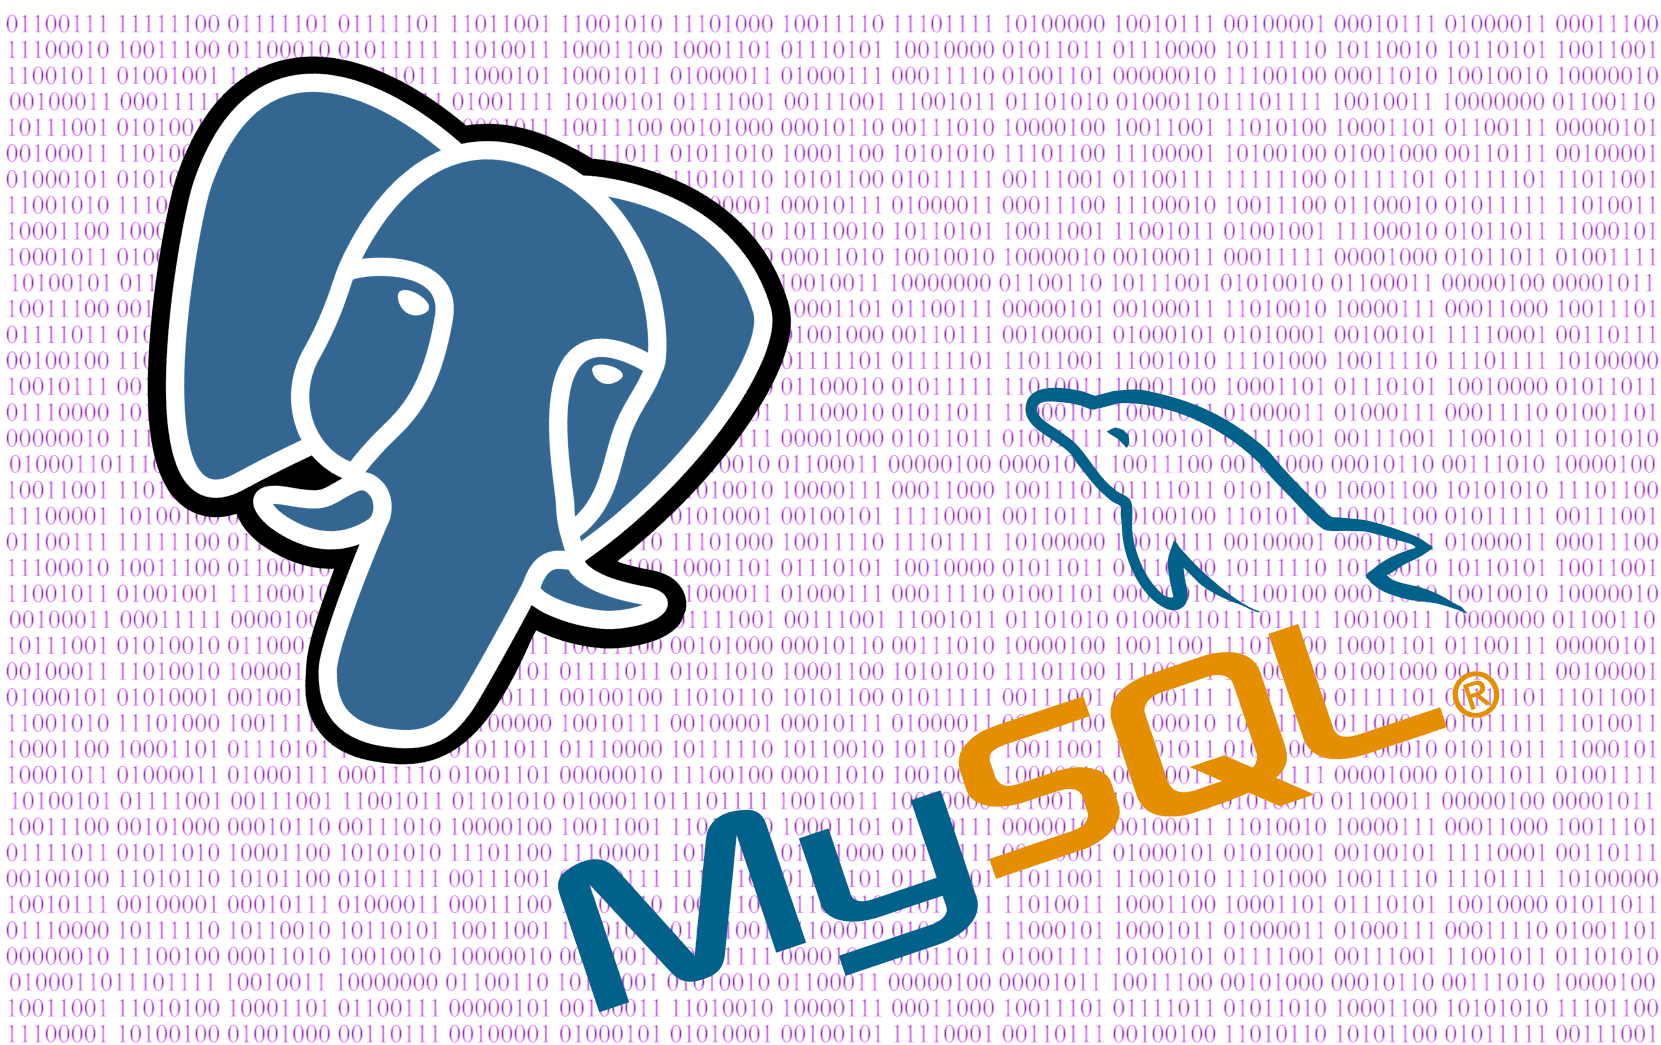 MySQL/Postgres